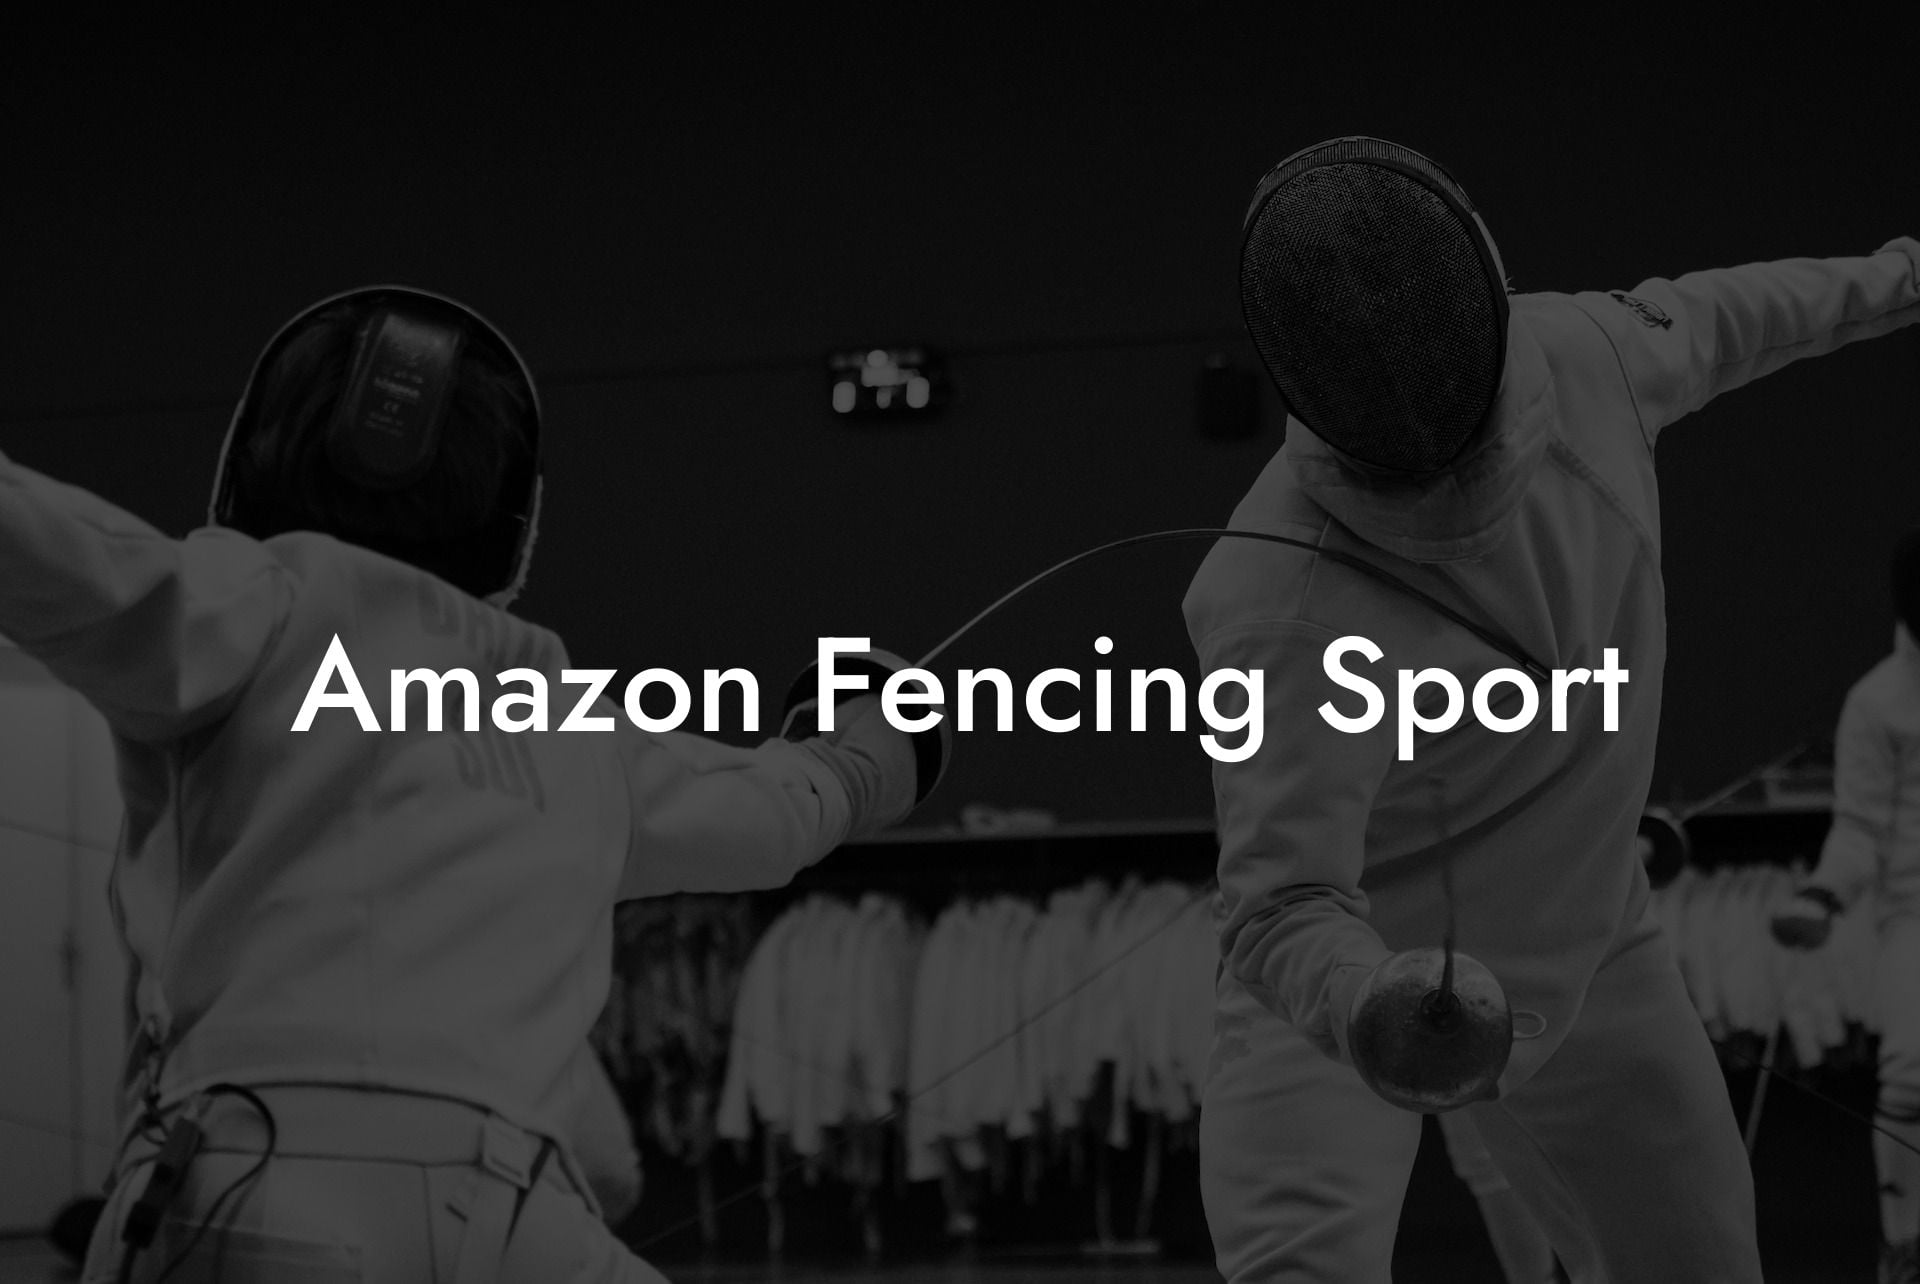 Amazon Fencing Sport